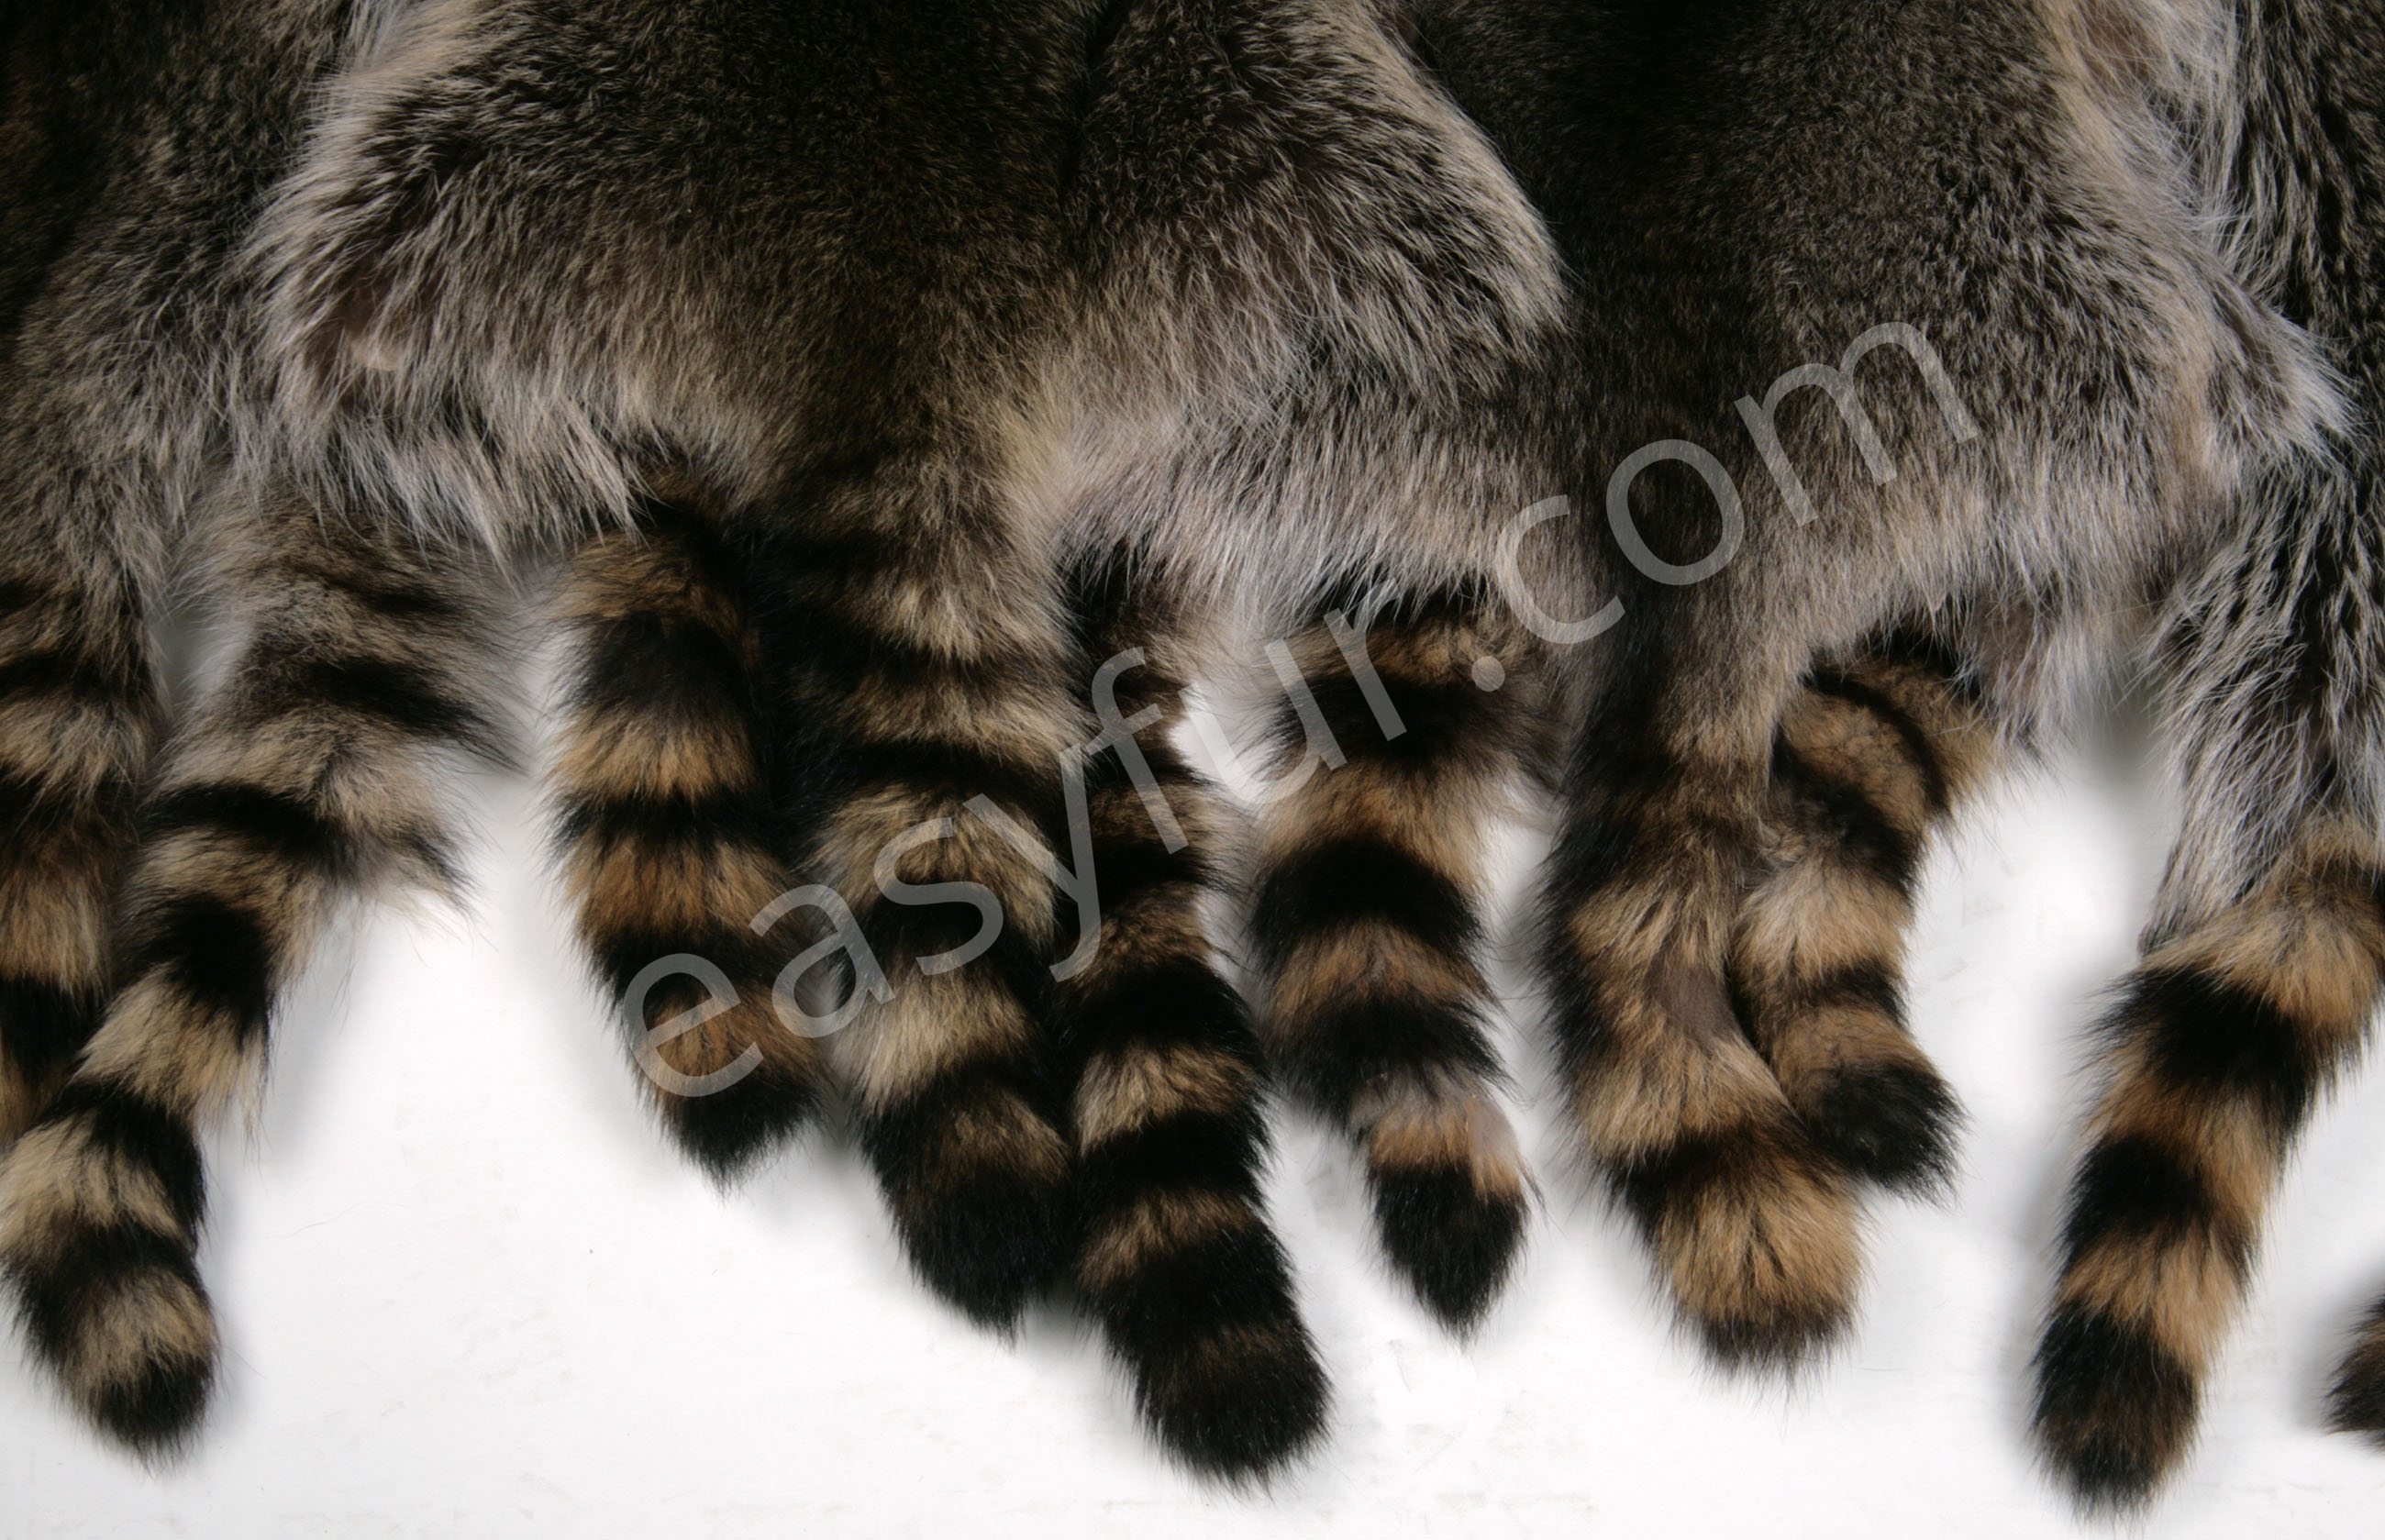 Canadian Raccoon Skins (Fur Harvesters)